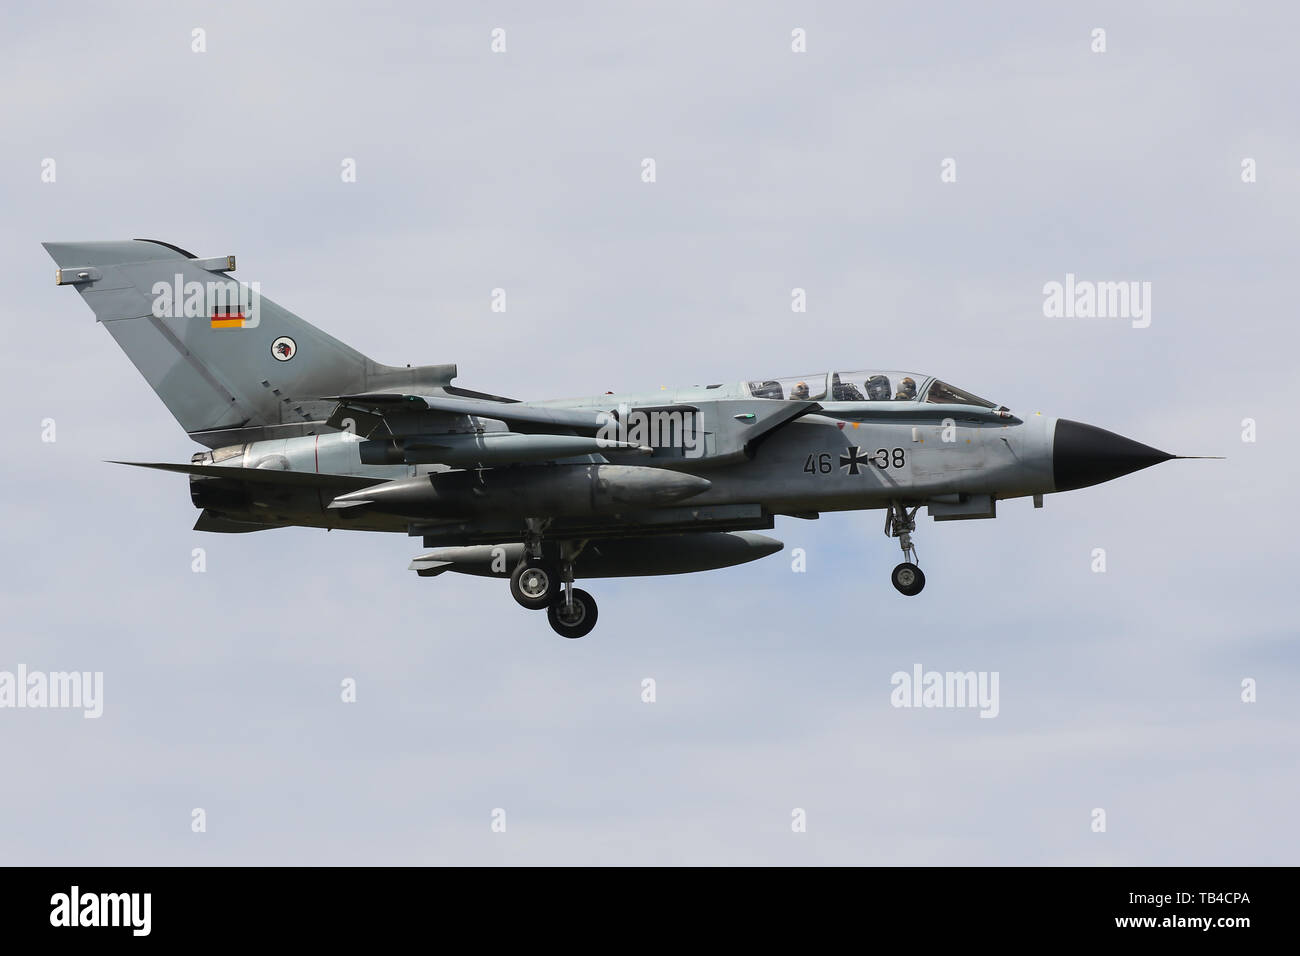 Eine Luftwaffe Panavia Tornado IDS landet am Mont-de-Marsan Air Base während der NATO Tiger Meet 2019 Übung Stockfoto